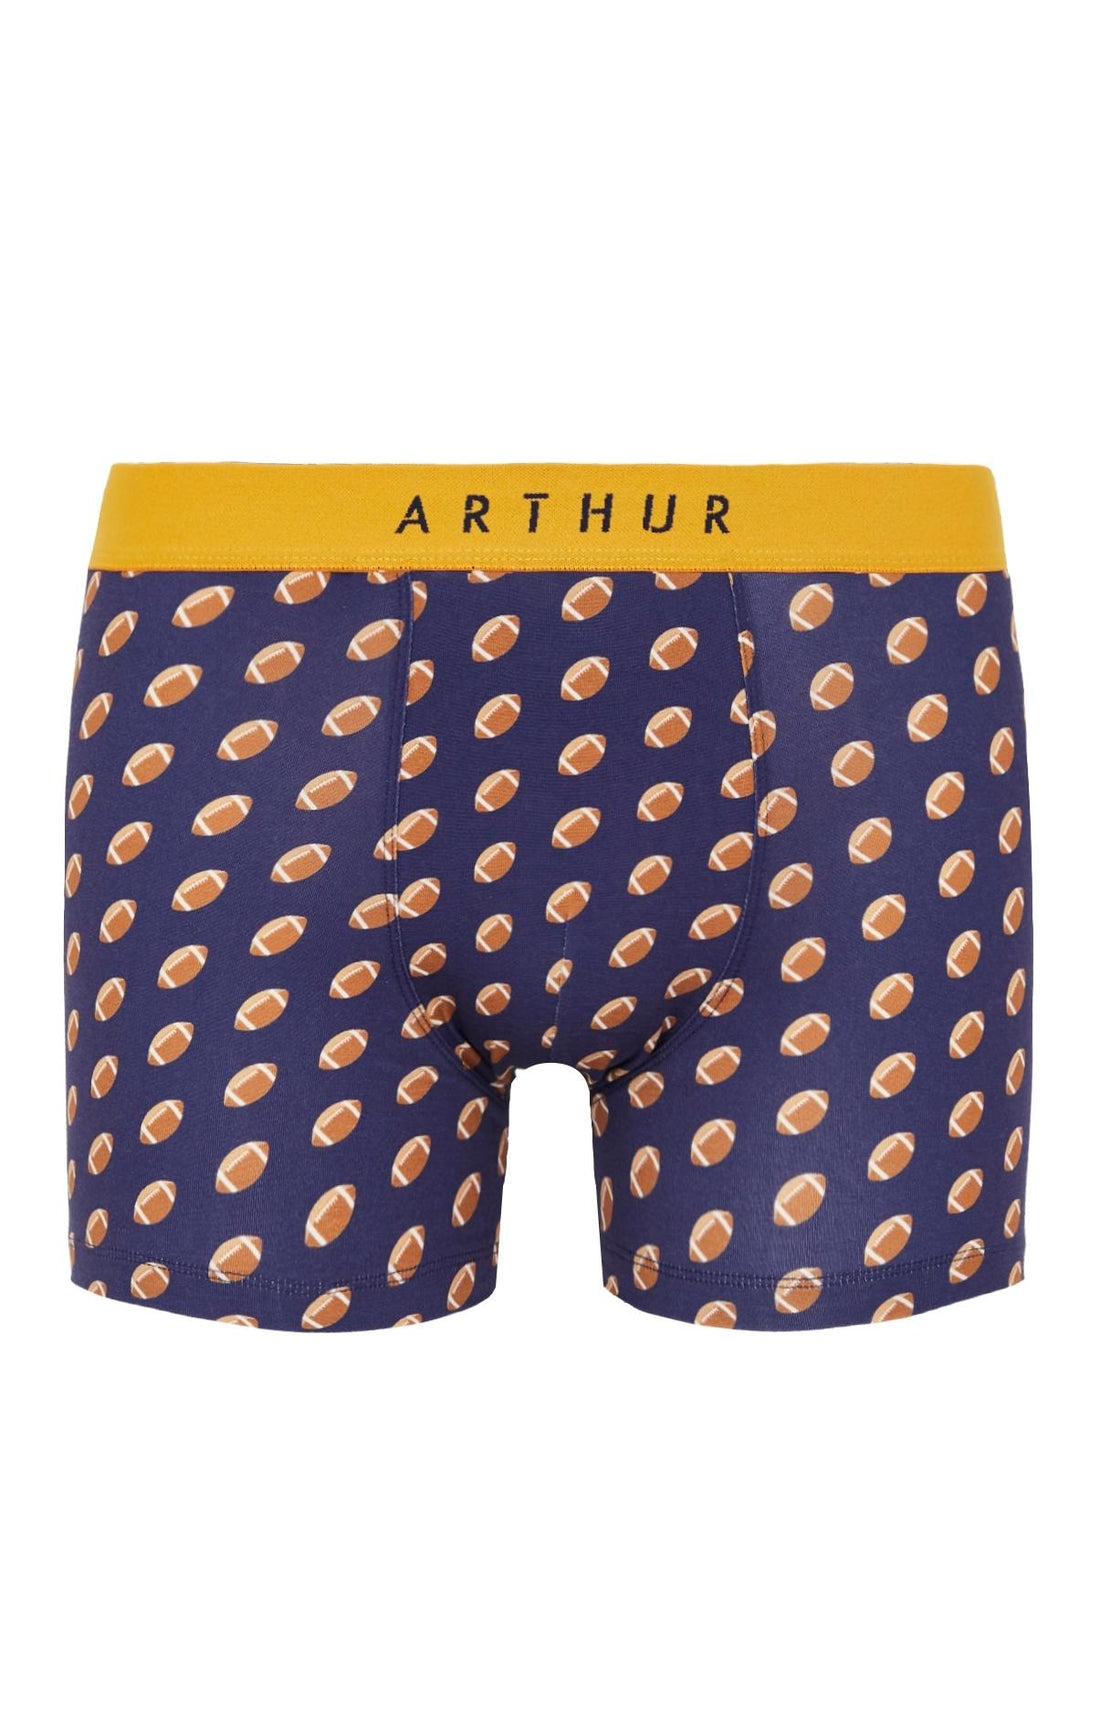 Boxer Marine | Sous-vêtements – Arthur homme